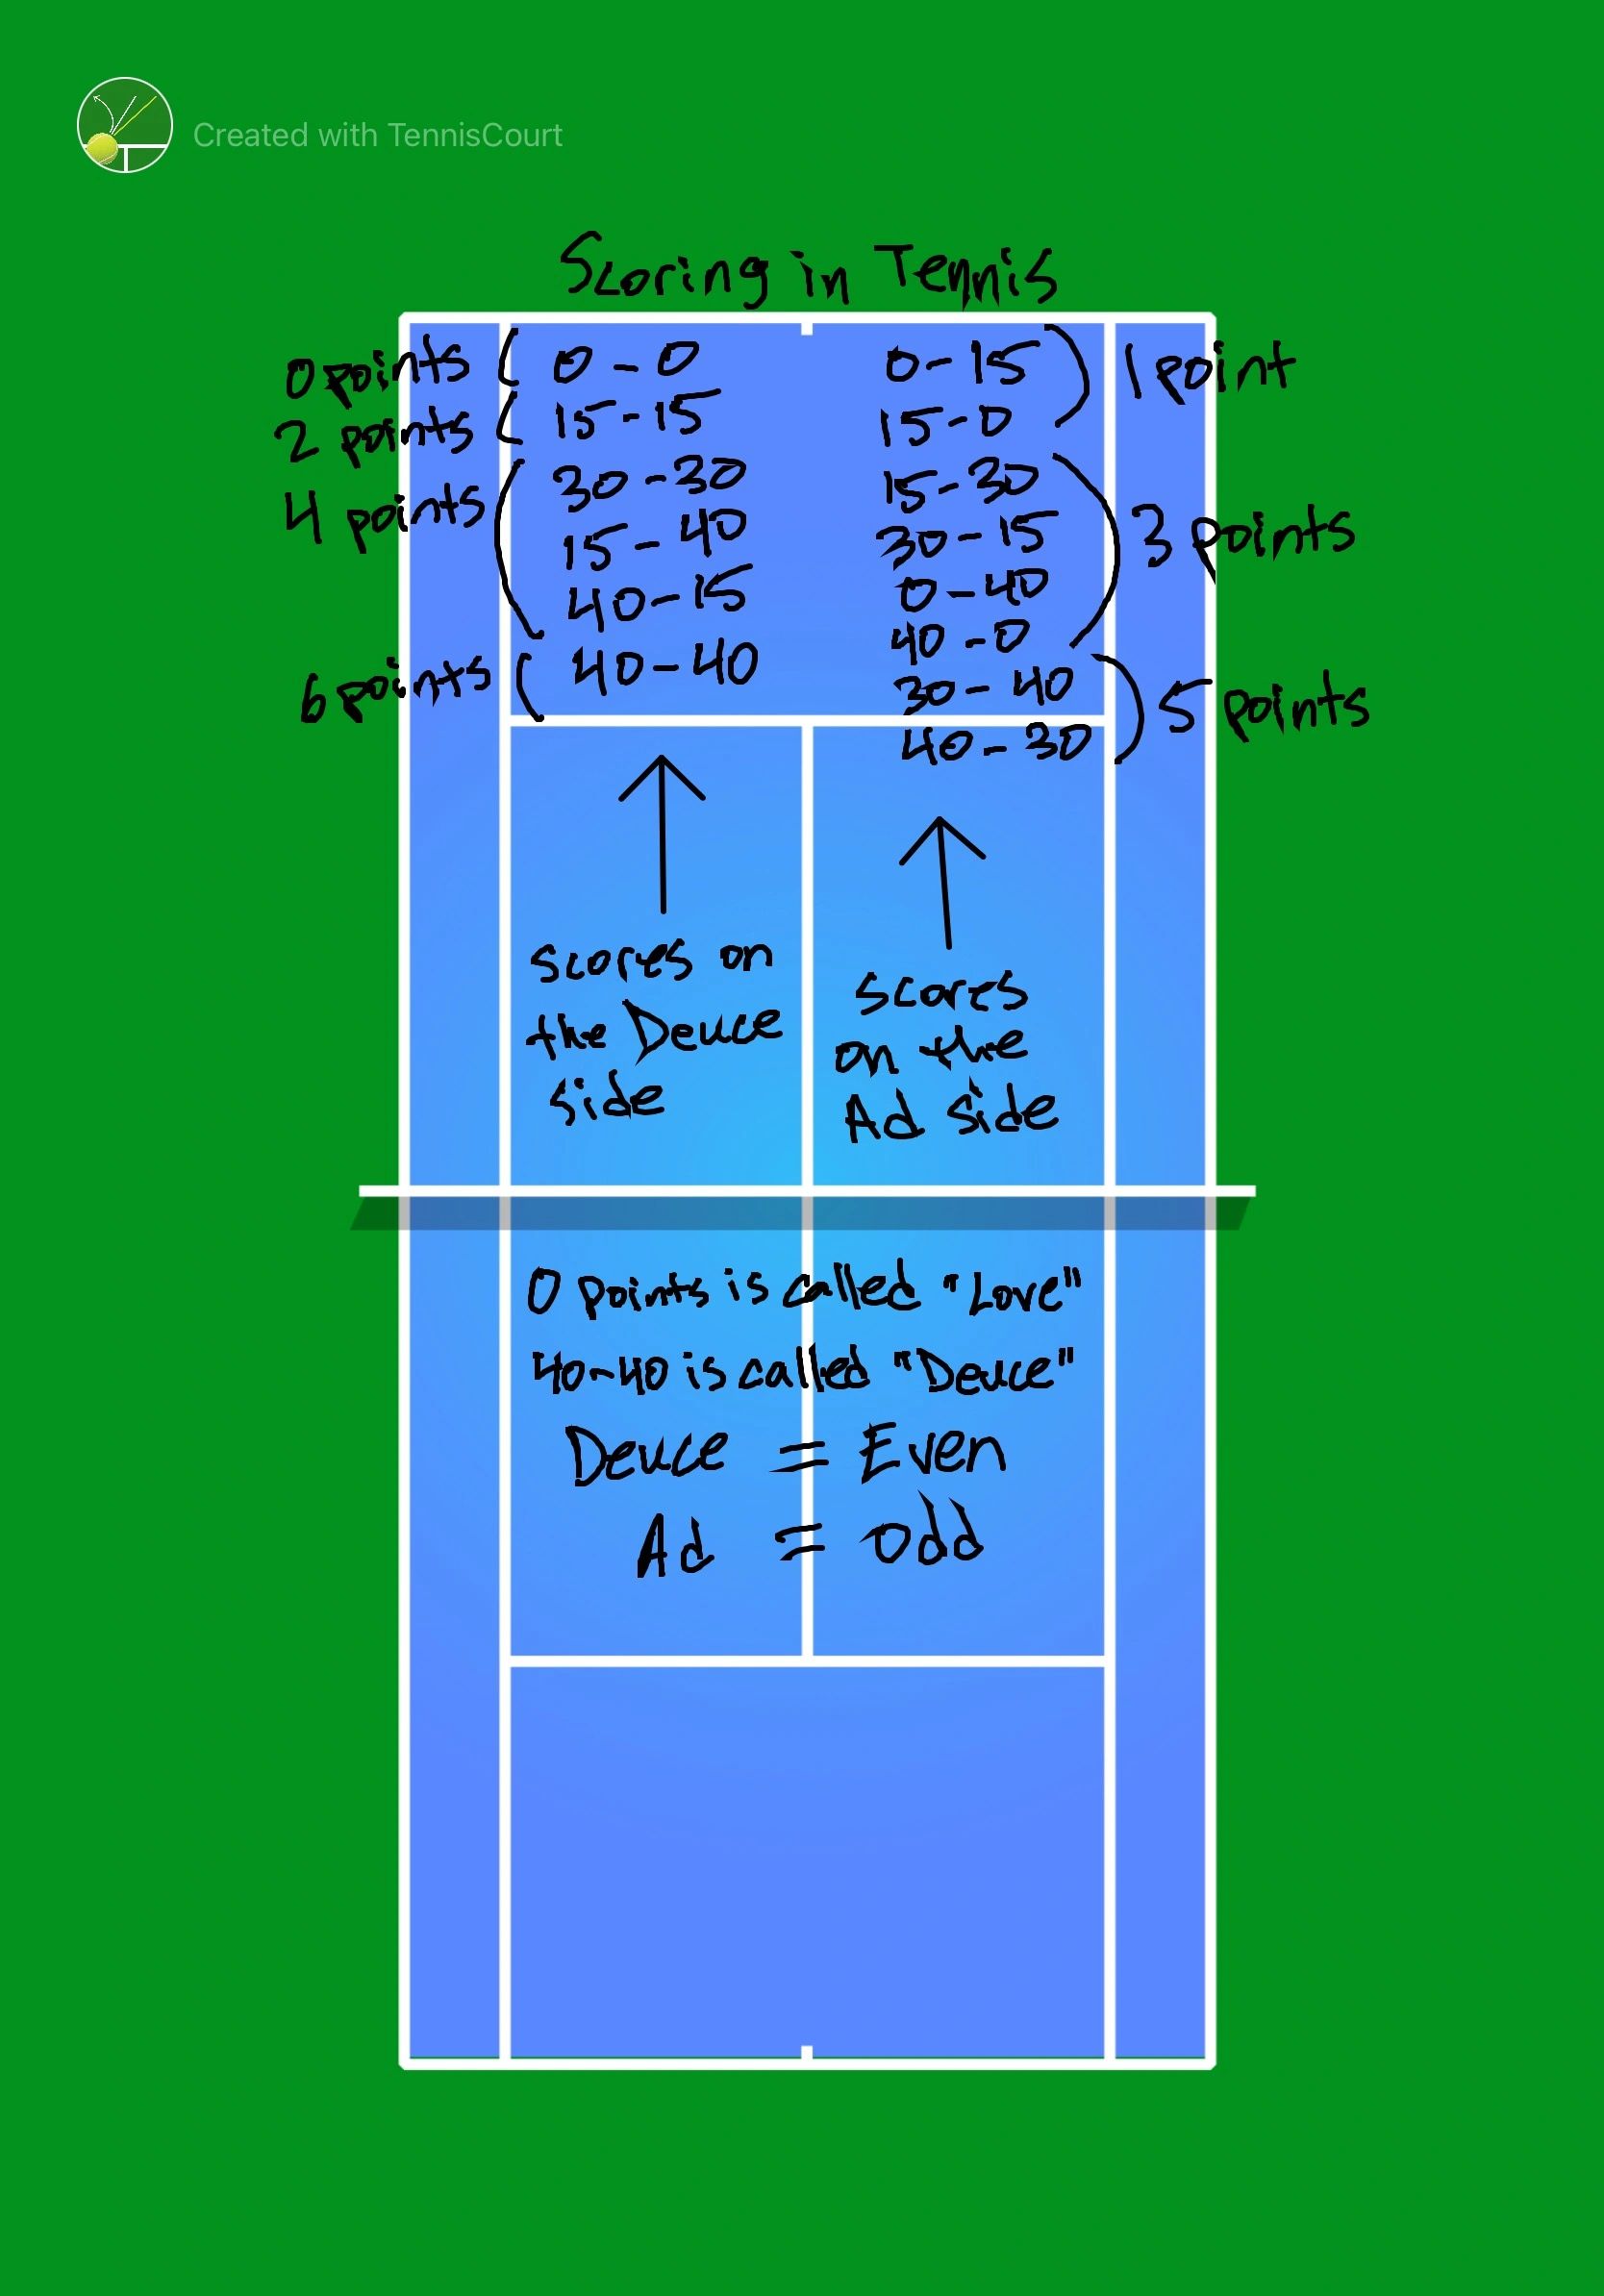 Tennis scoring system - Wikipedia